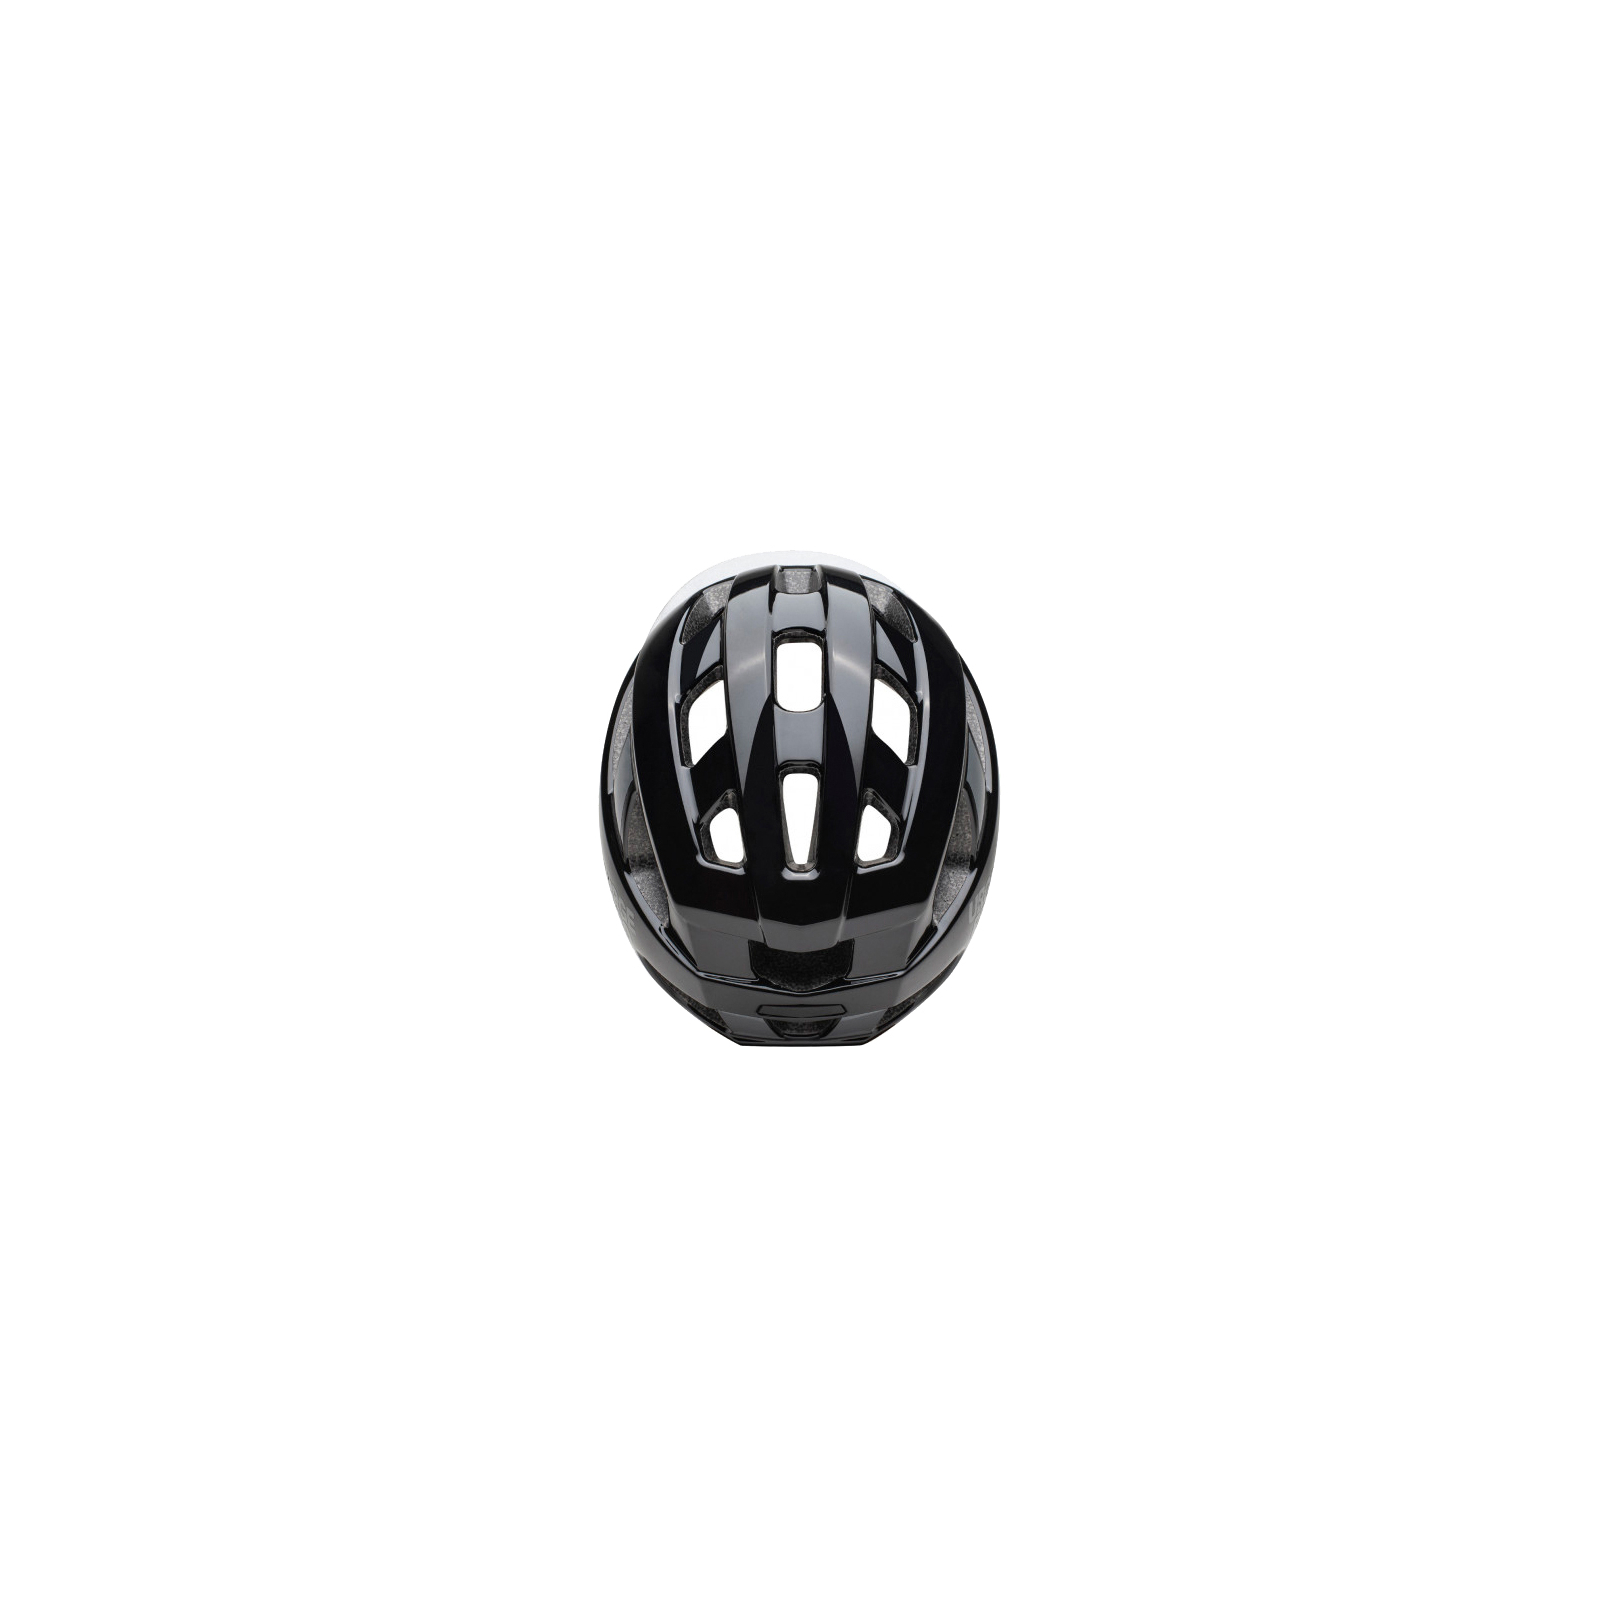 Шлем Urge Strail Чорний L/XL 59-63 см (UBP22690L) изображение 4